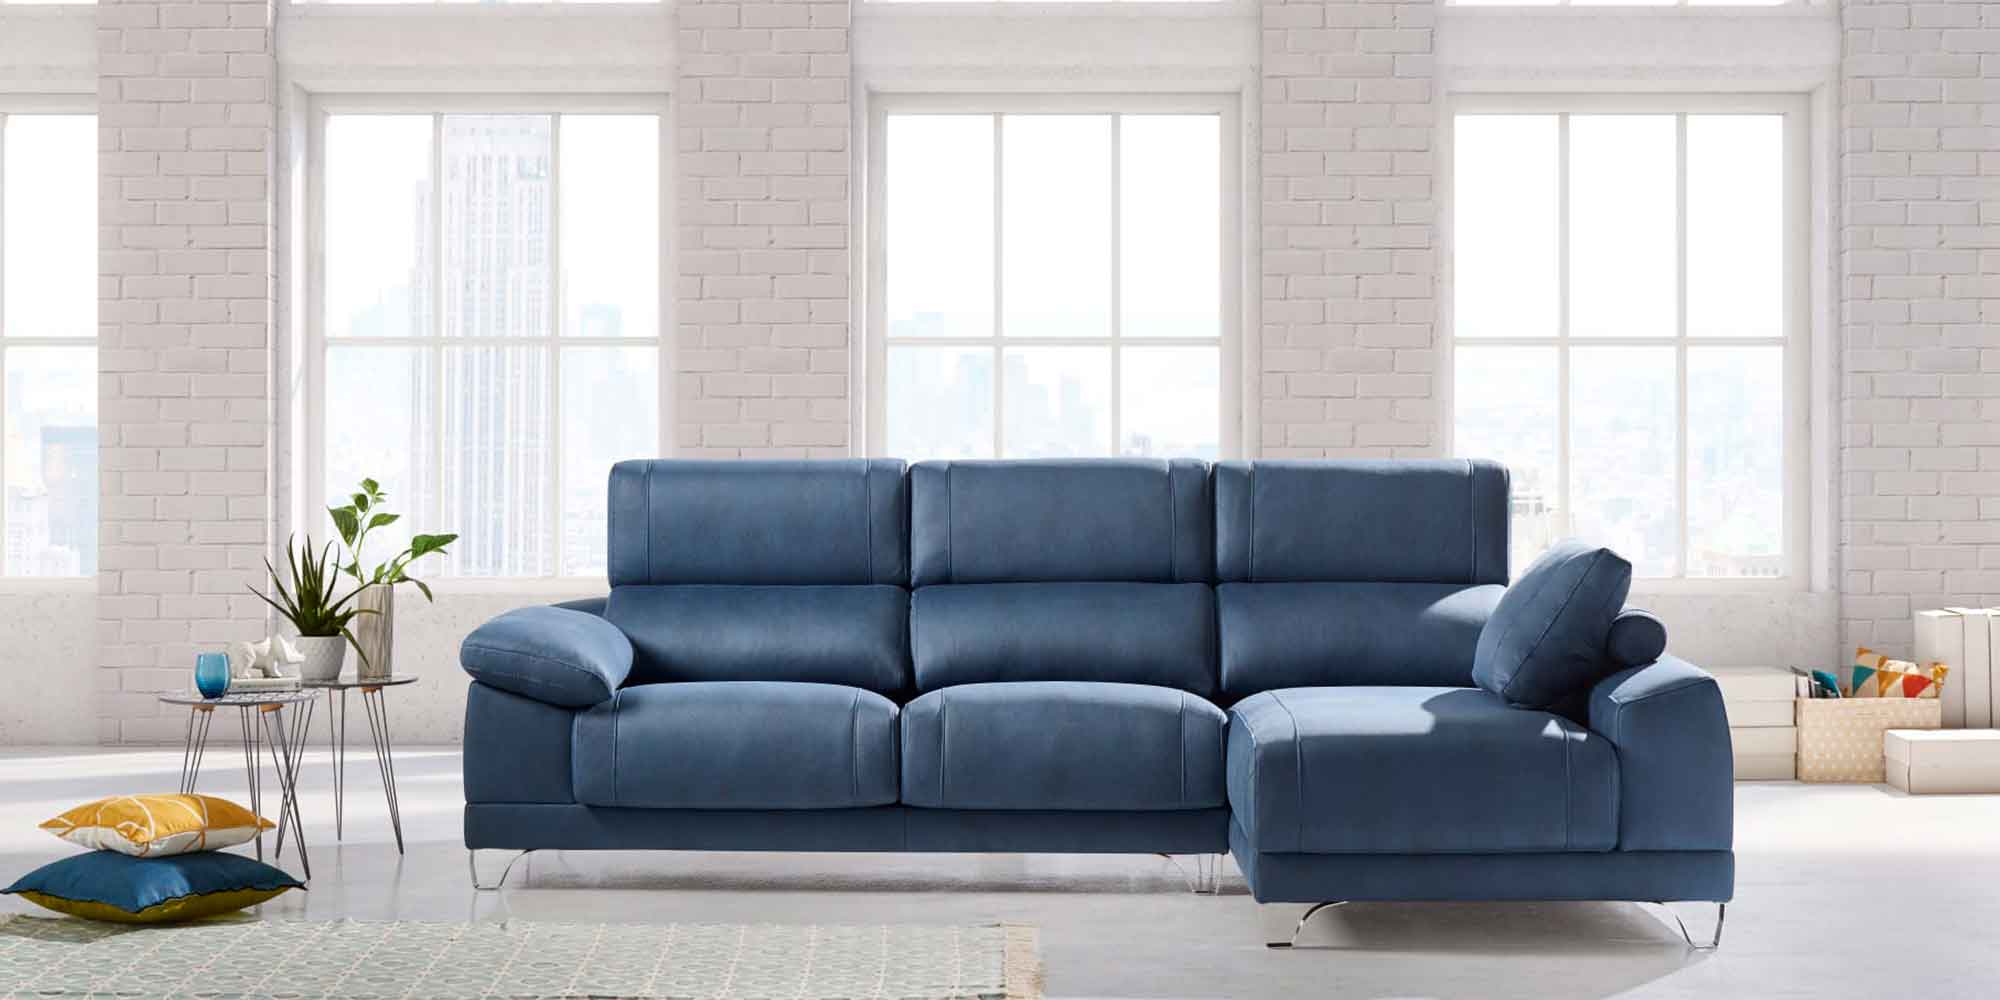 Cuál es la mejor tela para tapizar un sofá?